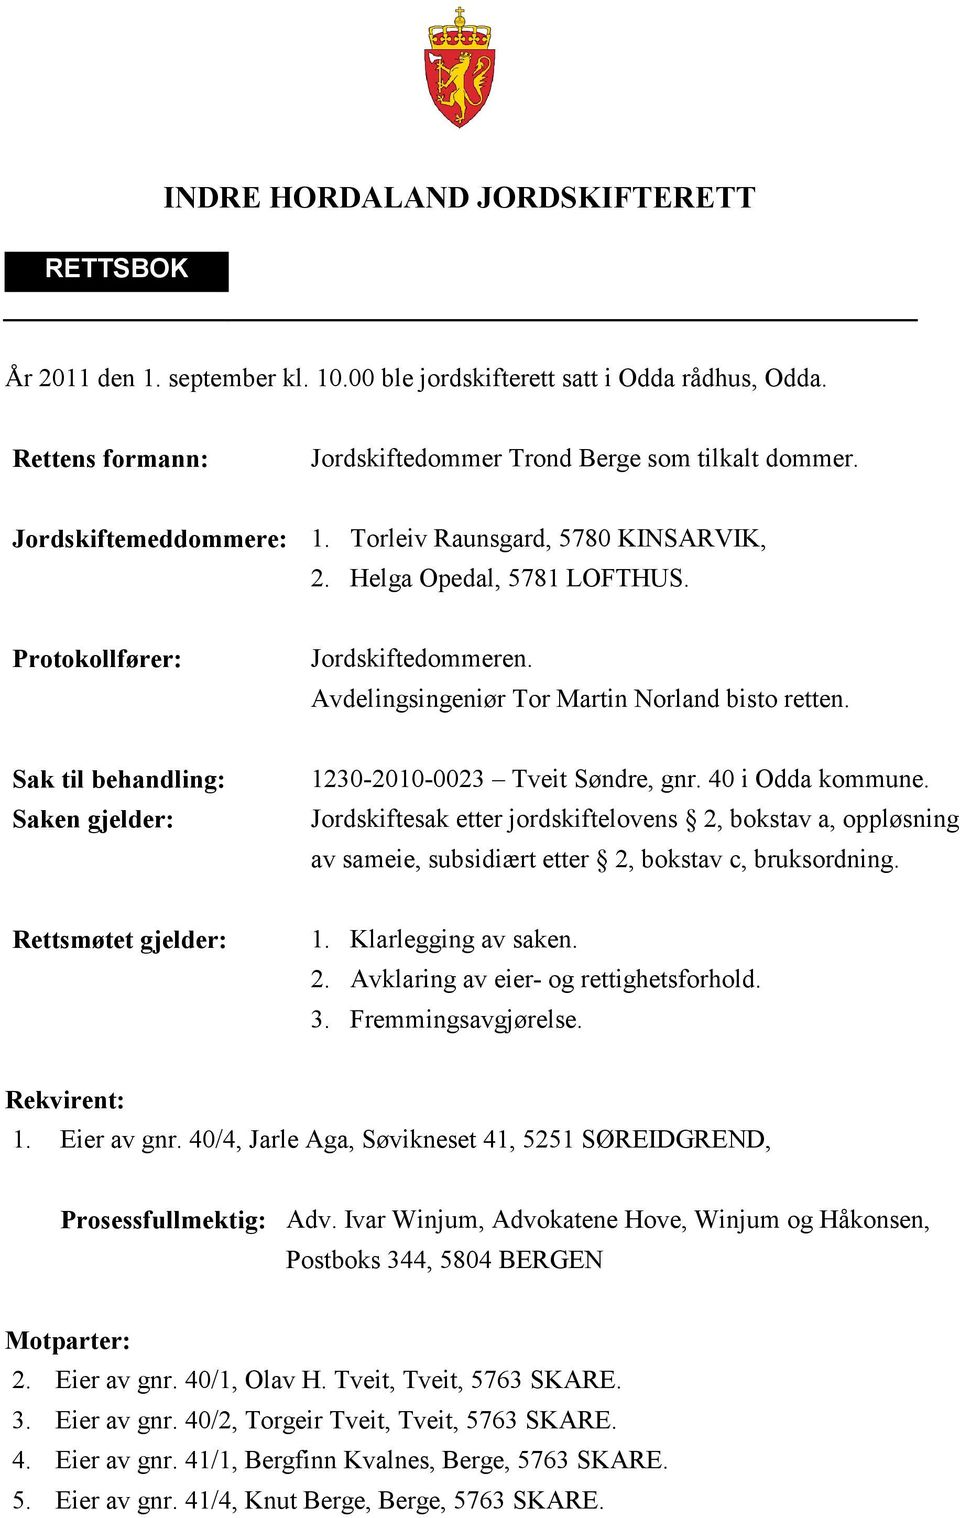 Sak til behandling: Saken gjelder: 1230-2010-0023 Tveit Søndre, gnr. 40 i Odda kommune.